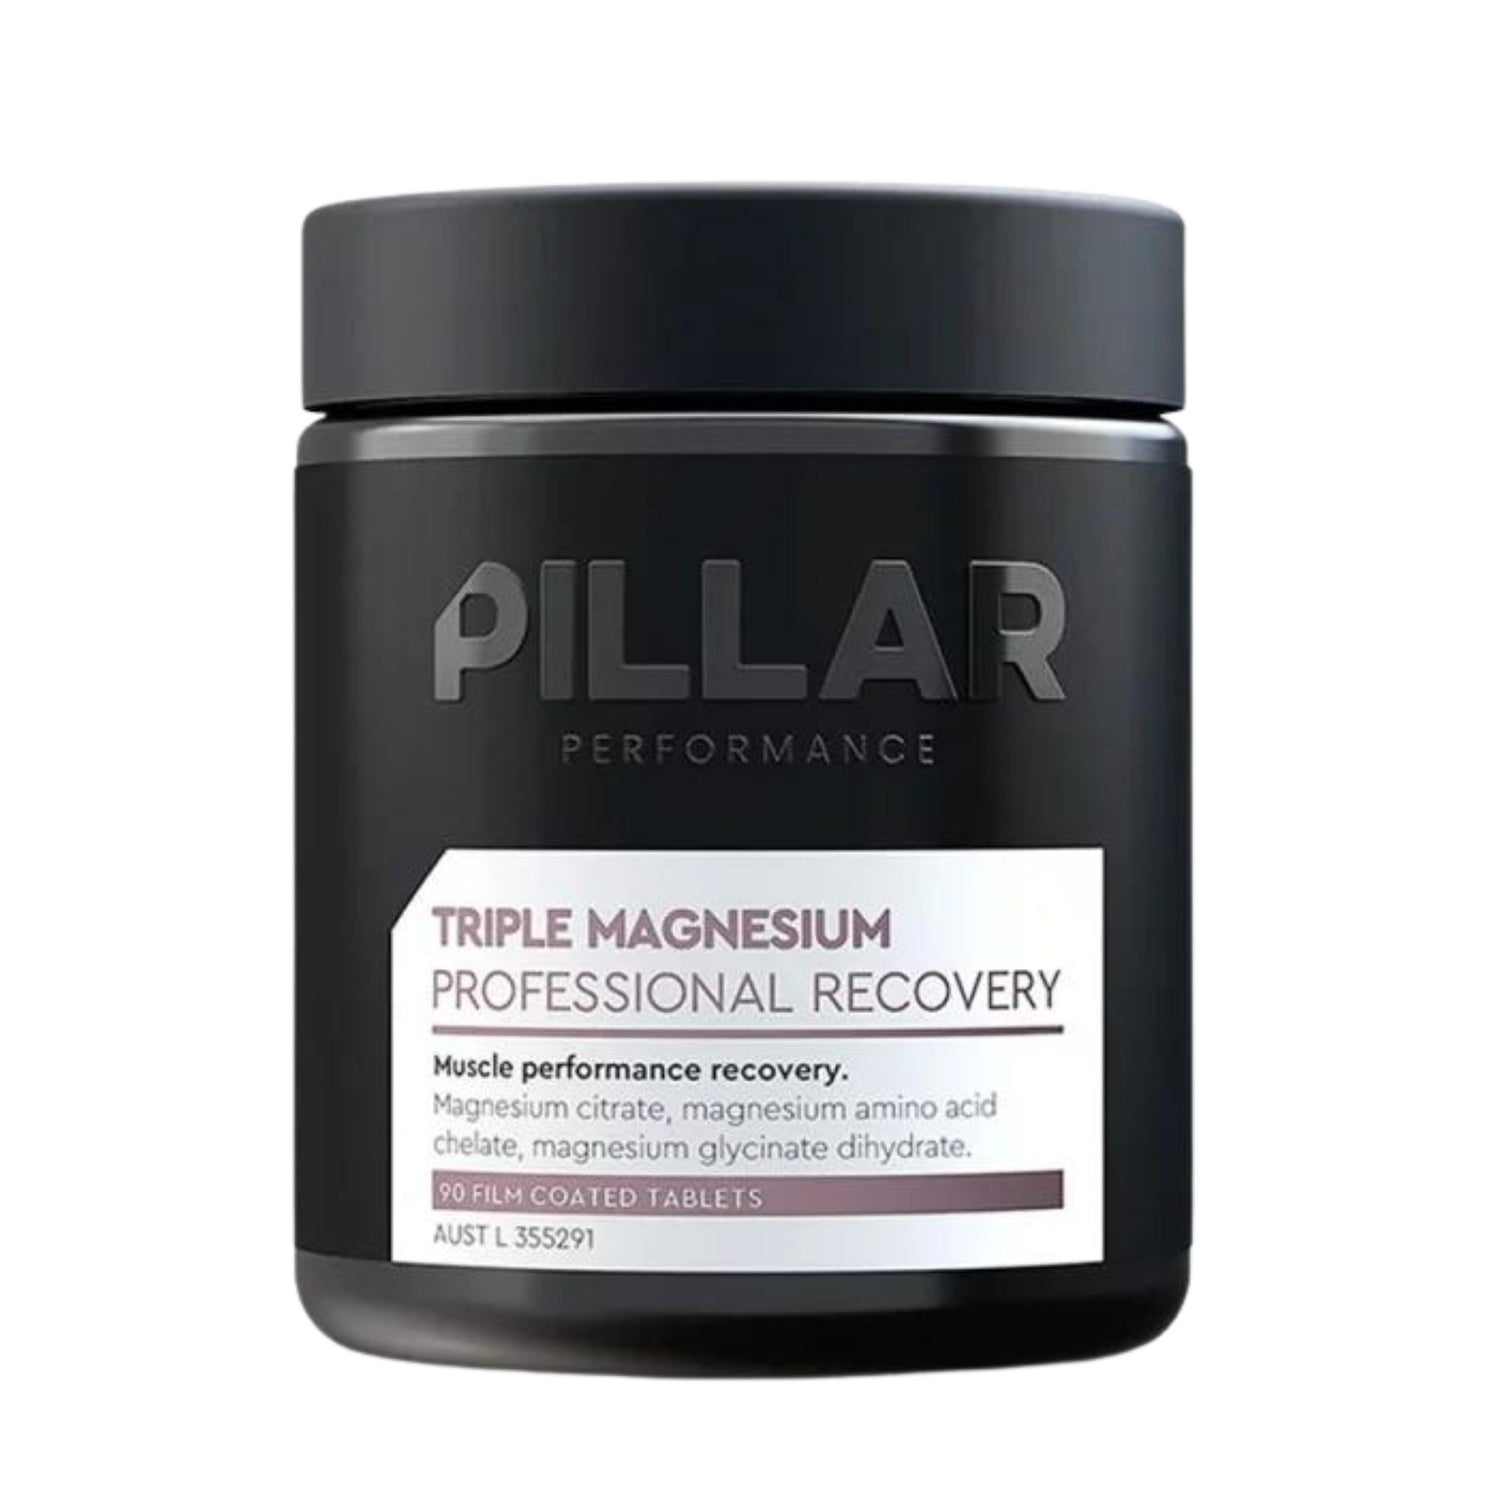 Pillar Performance Triple Magnesium Capsules